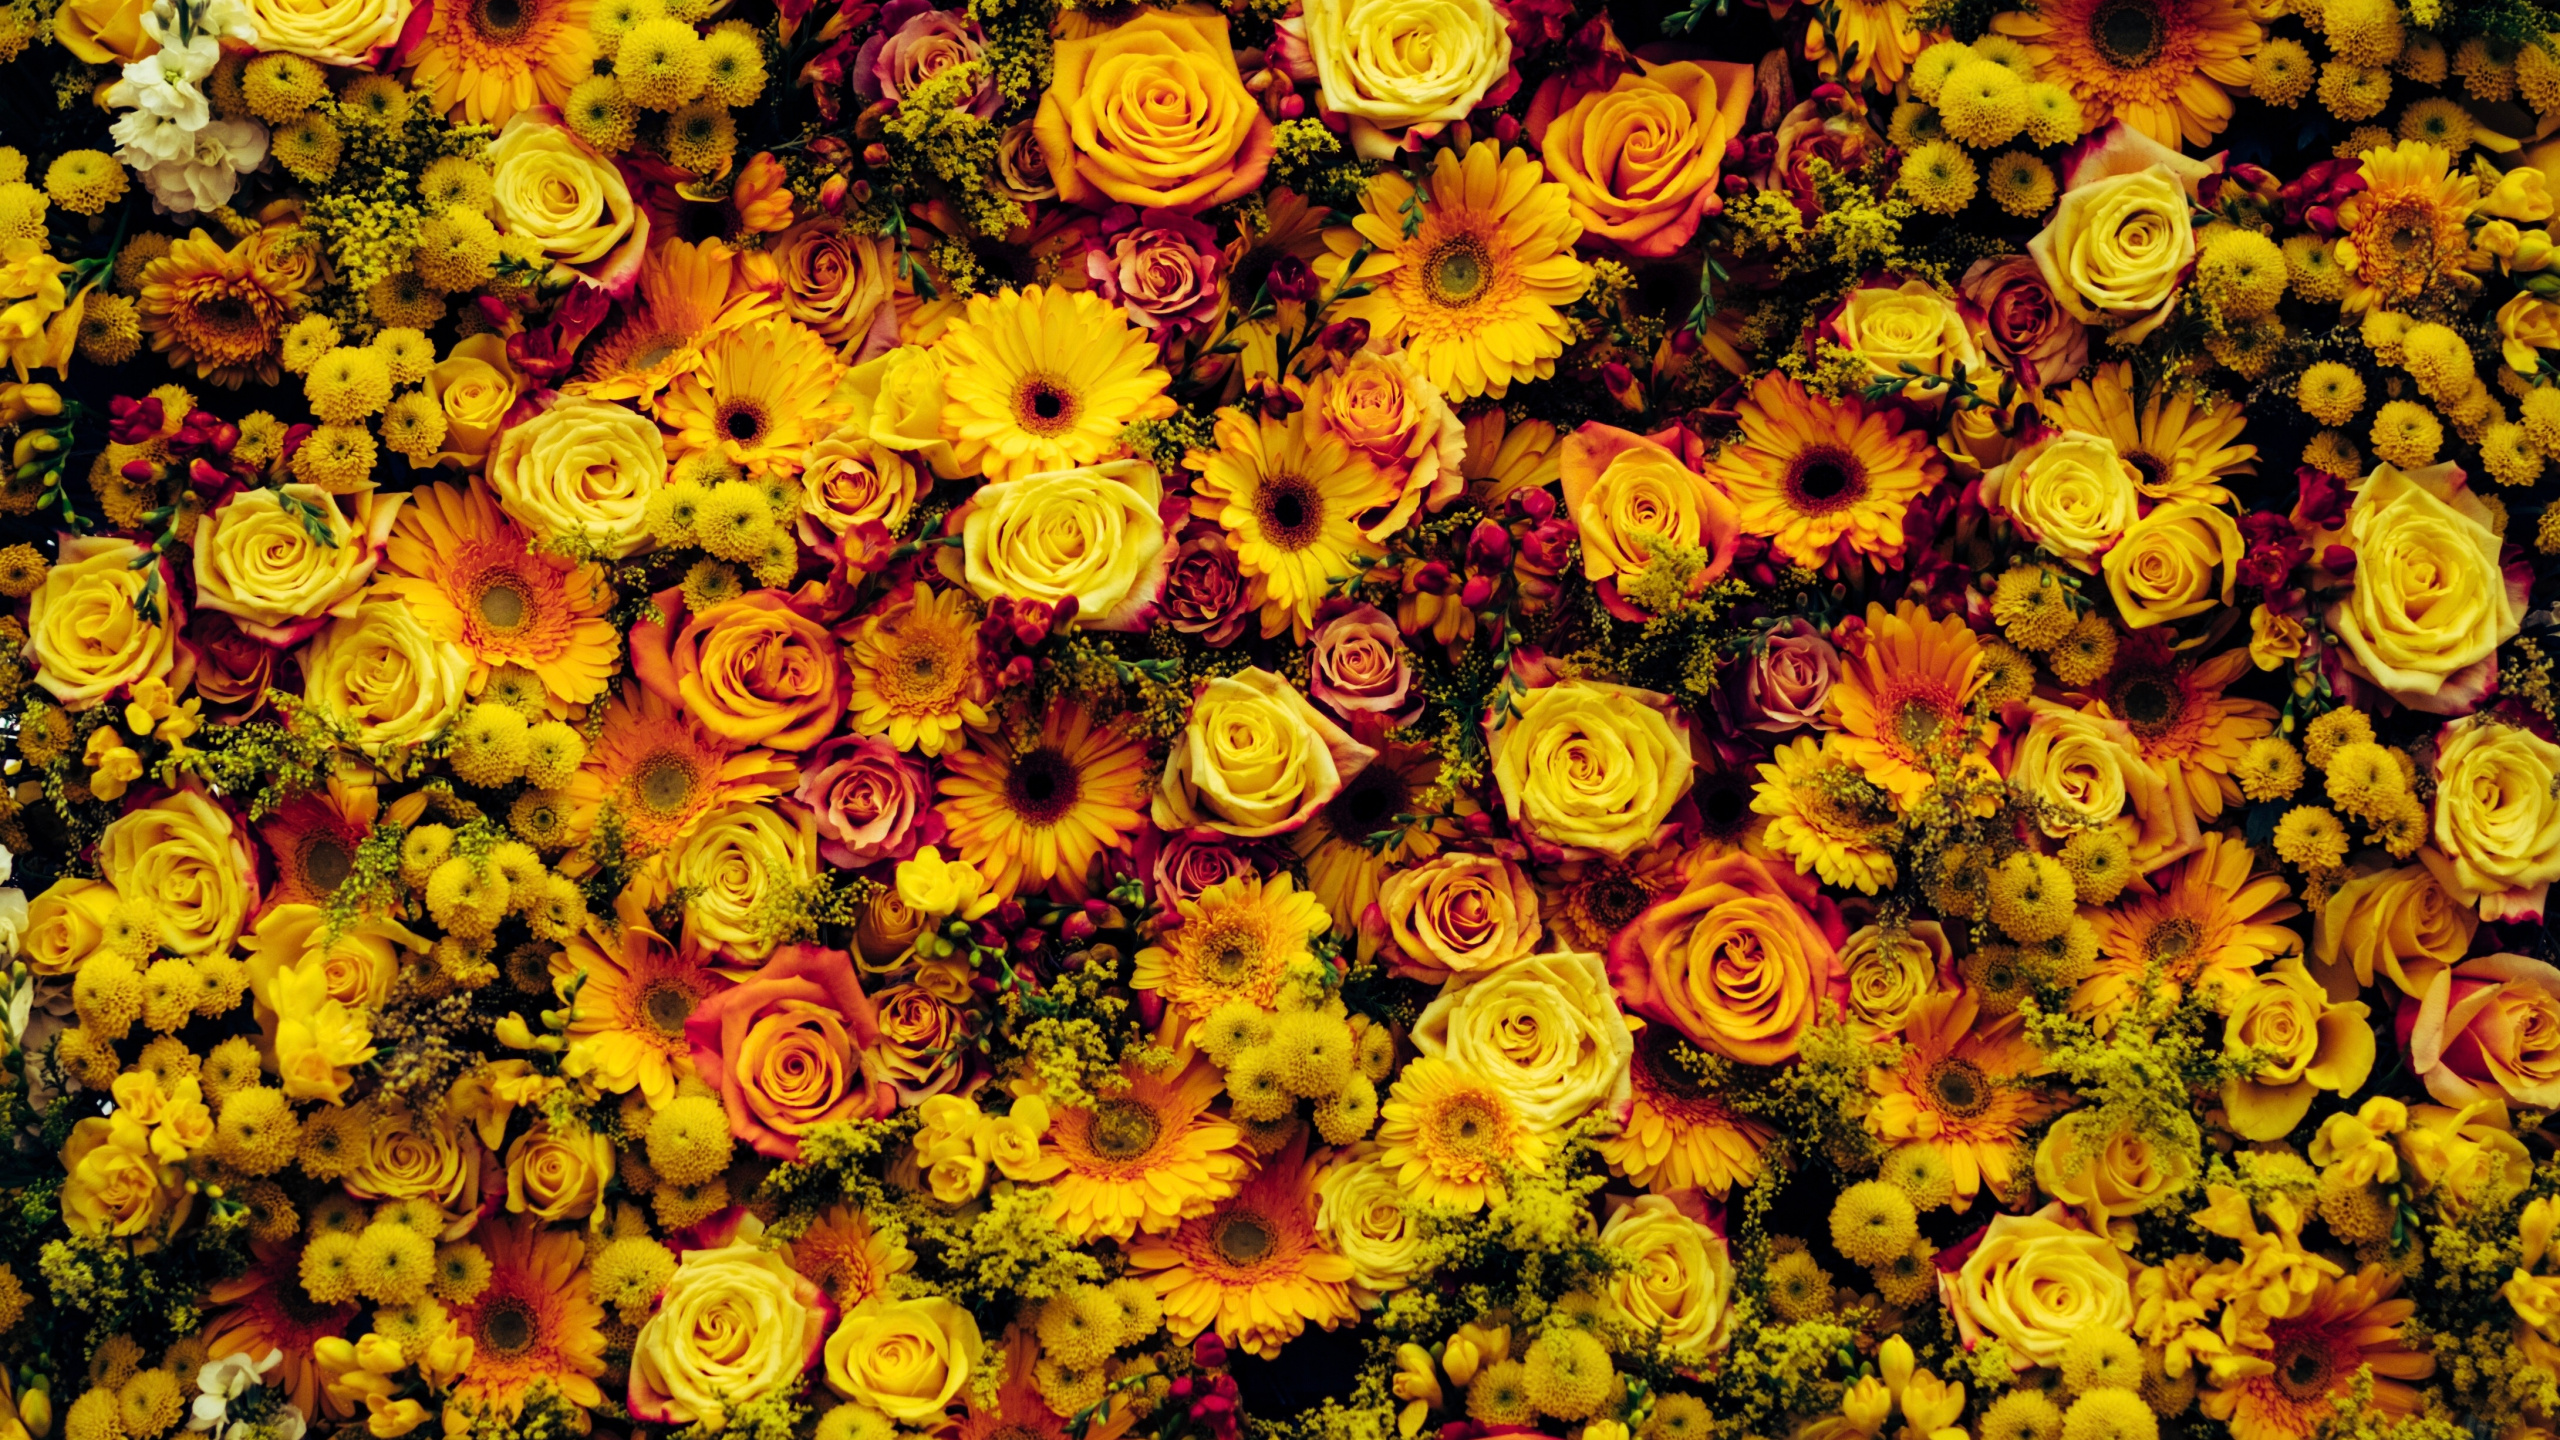 Campo de Flores Amarillas y Naranjas. Wallpaper in 2560x1440 Resolution